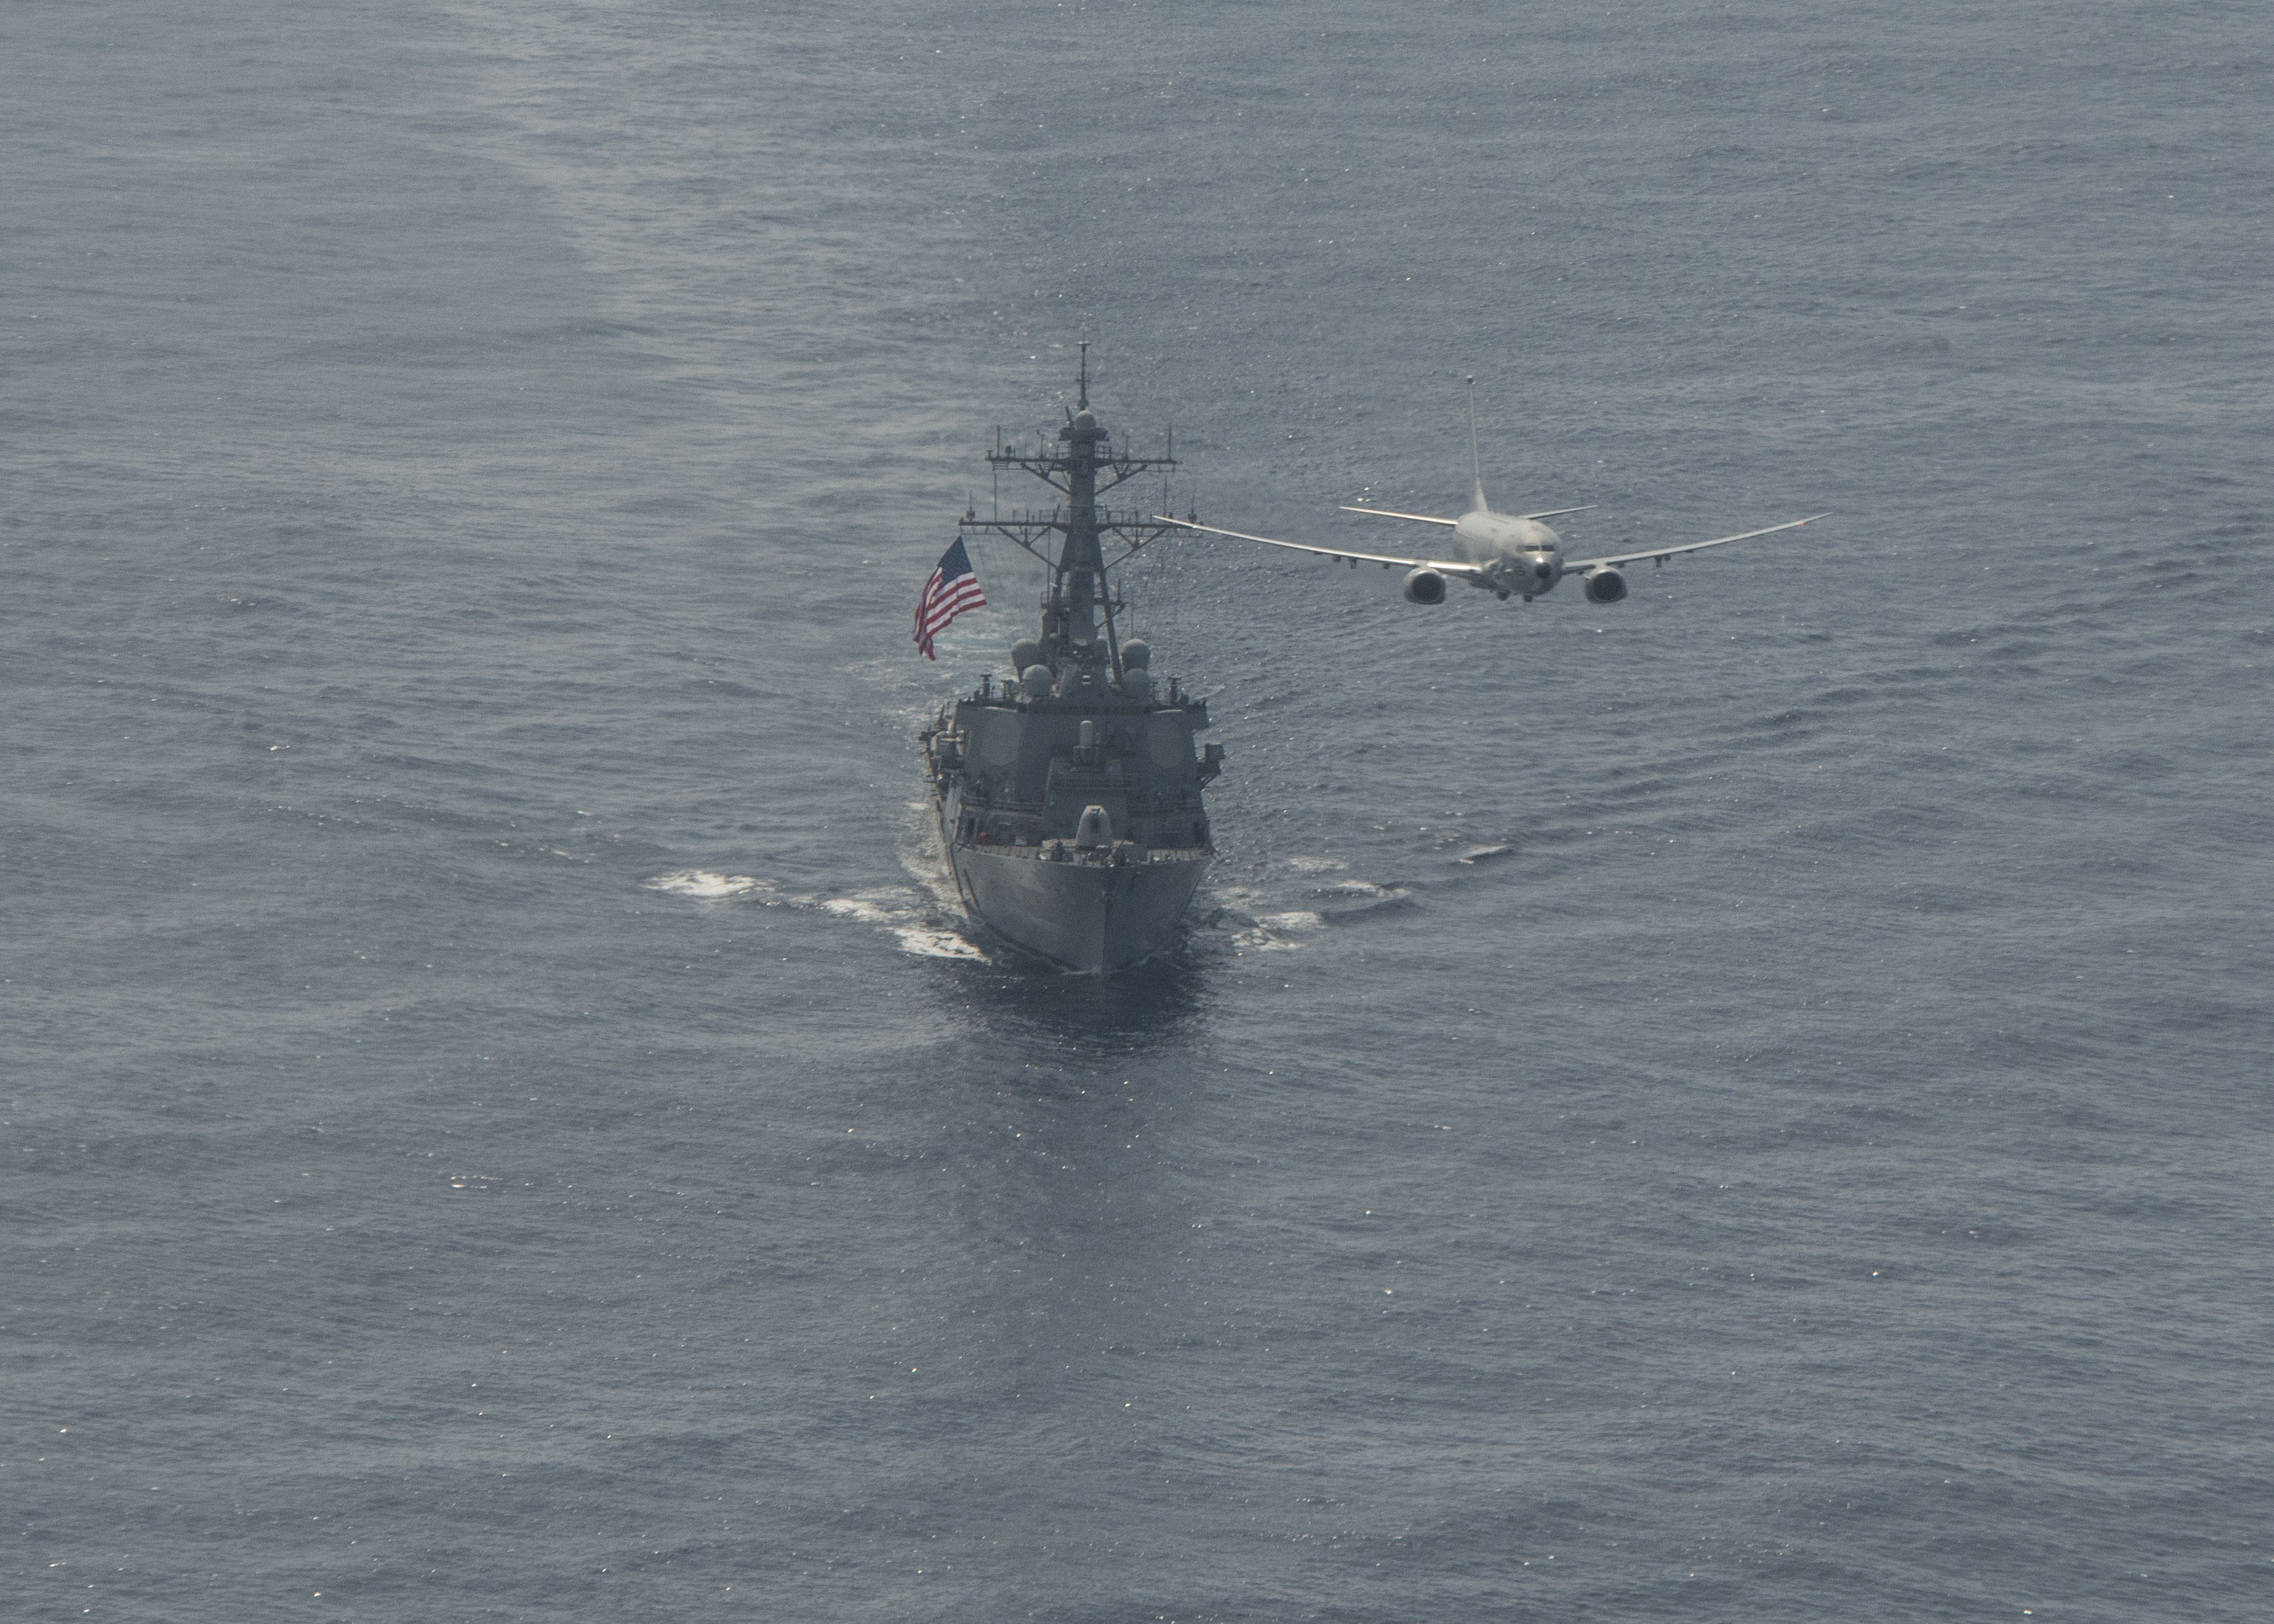 Многофункциональный морской патрульный самолет  P-8A Poseidon  4-й патрульной эскадрильи ВМС США и американский эсминец USS Porter (DDG 78), типа Arleigh Burke, на учении в Атлантике, фото сделано 29 марта 2020 года в зоне ответственности 6-го флота США